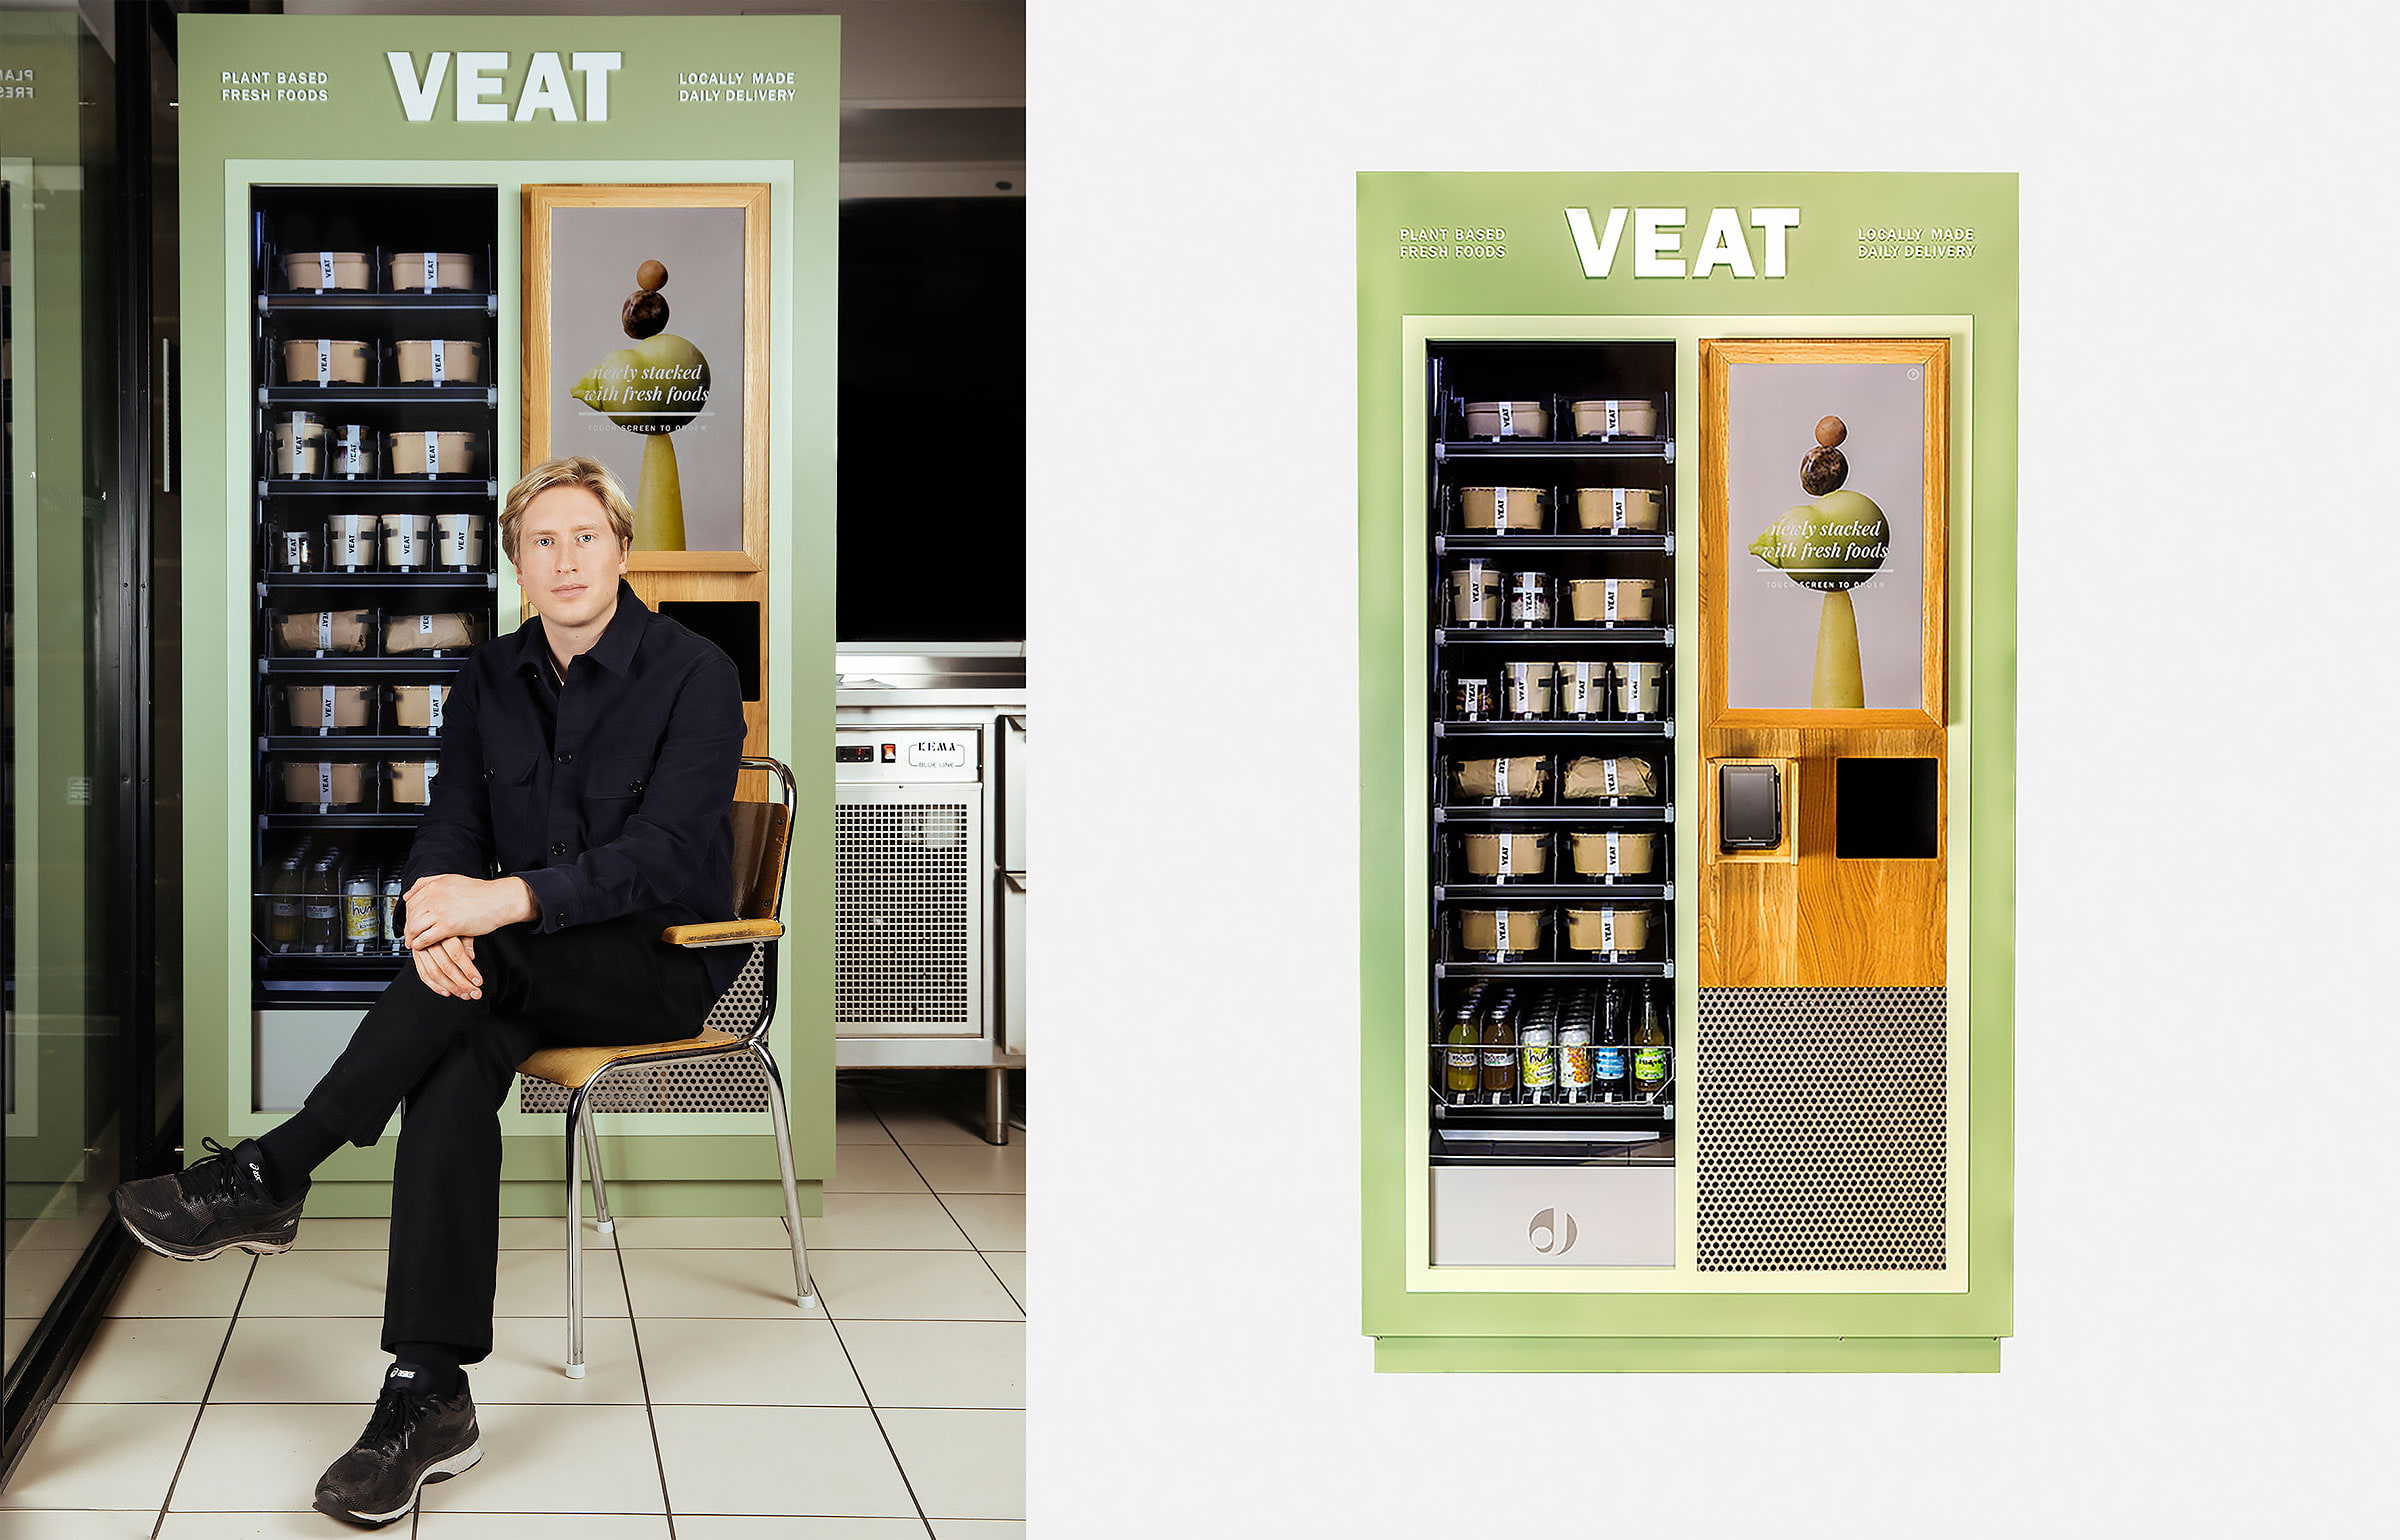 Veganska matautomater sätts ut i Stockholm